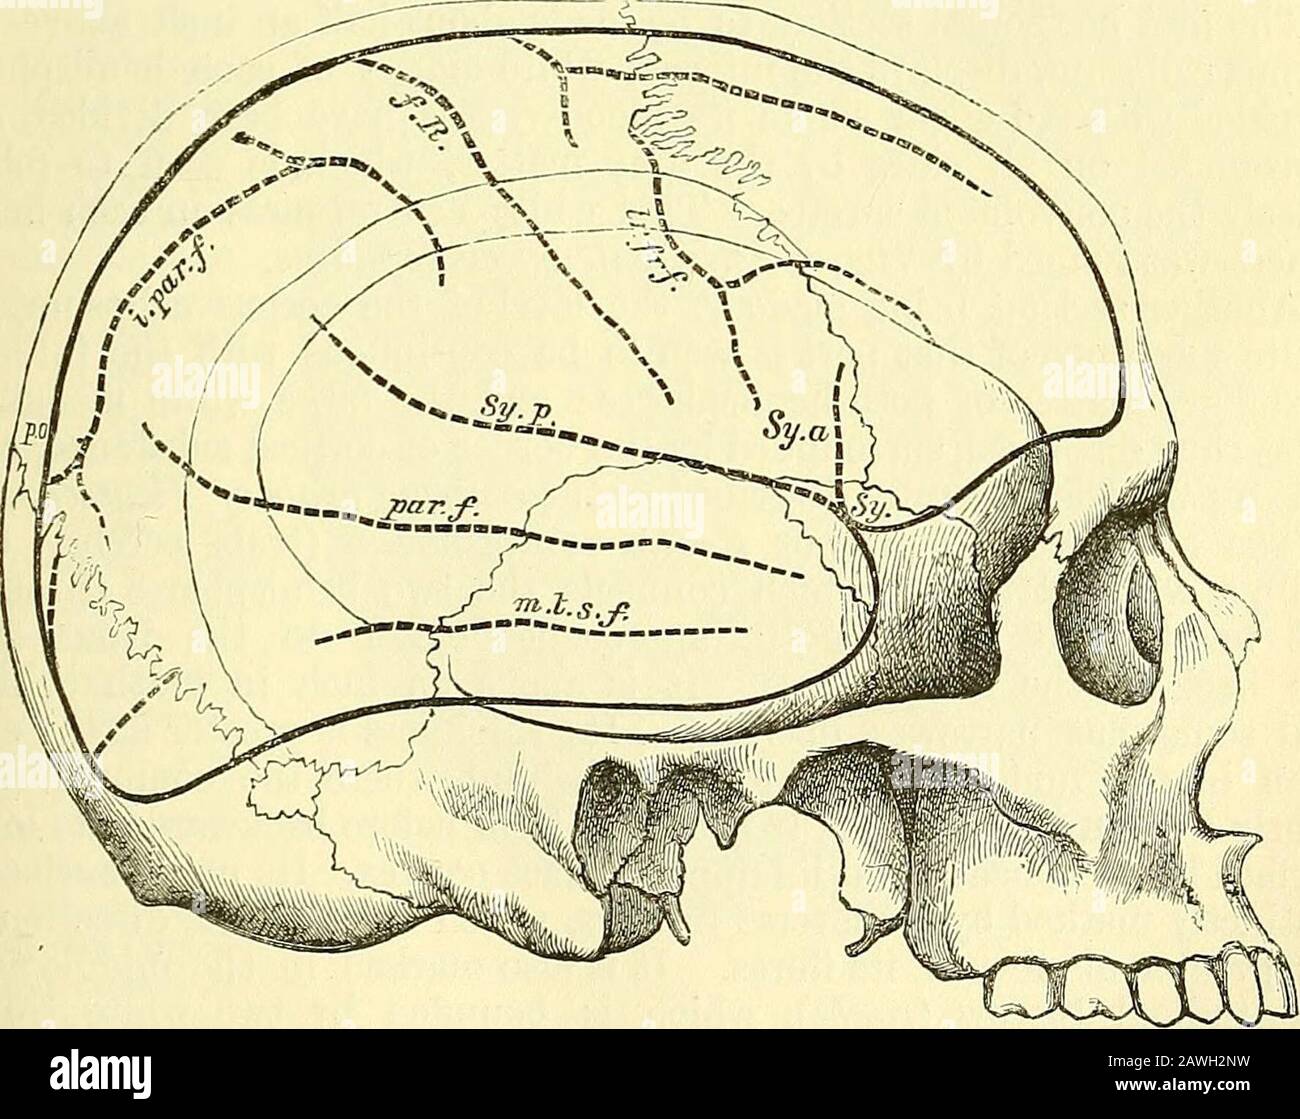 Elementi anatomici di Quain . t le due estremità del lobo limbico di Broca, Che sono separati dalla parte profonda della fessura di Sylvian, sono indirettamente uniti -ndth oneanother dalle radici del tratto olfattivo, così che il lobo olfattivo, di cui questa fonns una parte, è in iutimate connessione con il lobo limbico. Questa connessione è molto più cospicua ui animali. EELATION OP IL CEEEBRAL FISSTTRES E LE CONVOLUZIONI ALLE SUTURE THECRANIAL. Questa relazione è stata determinata per la prima volta esattamente da Broca, e successivamente è stata più ampiamente tracciata da Turner e Hefftler. Pin con broccainserved attraverso t Foto Stock